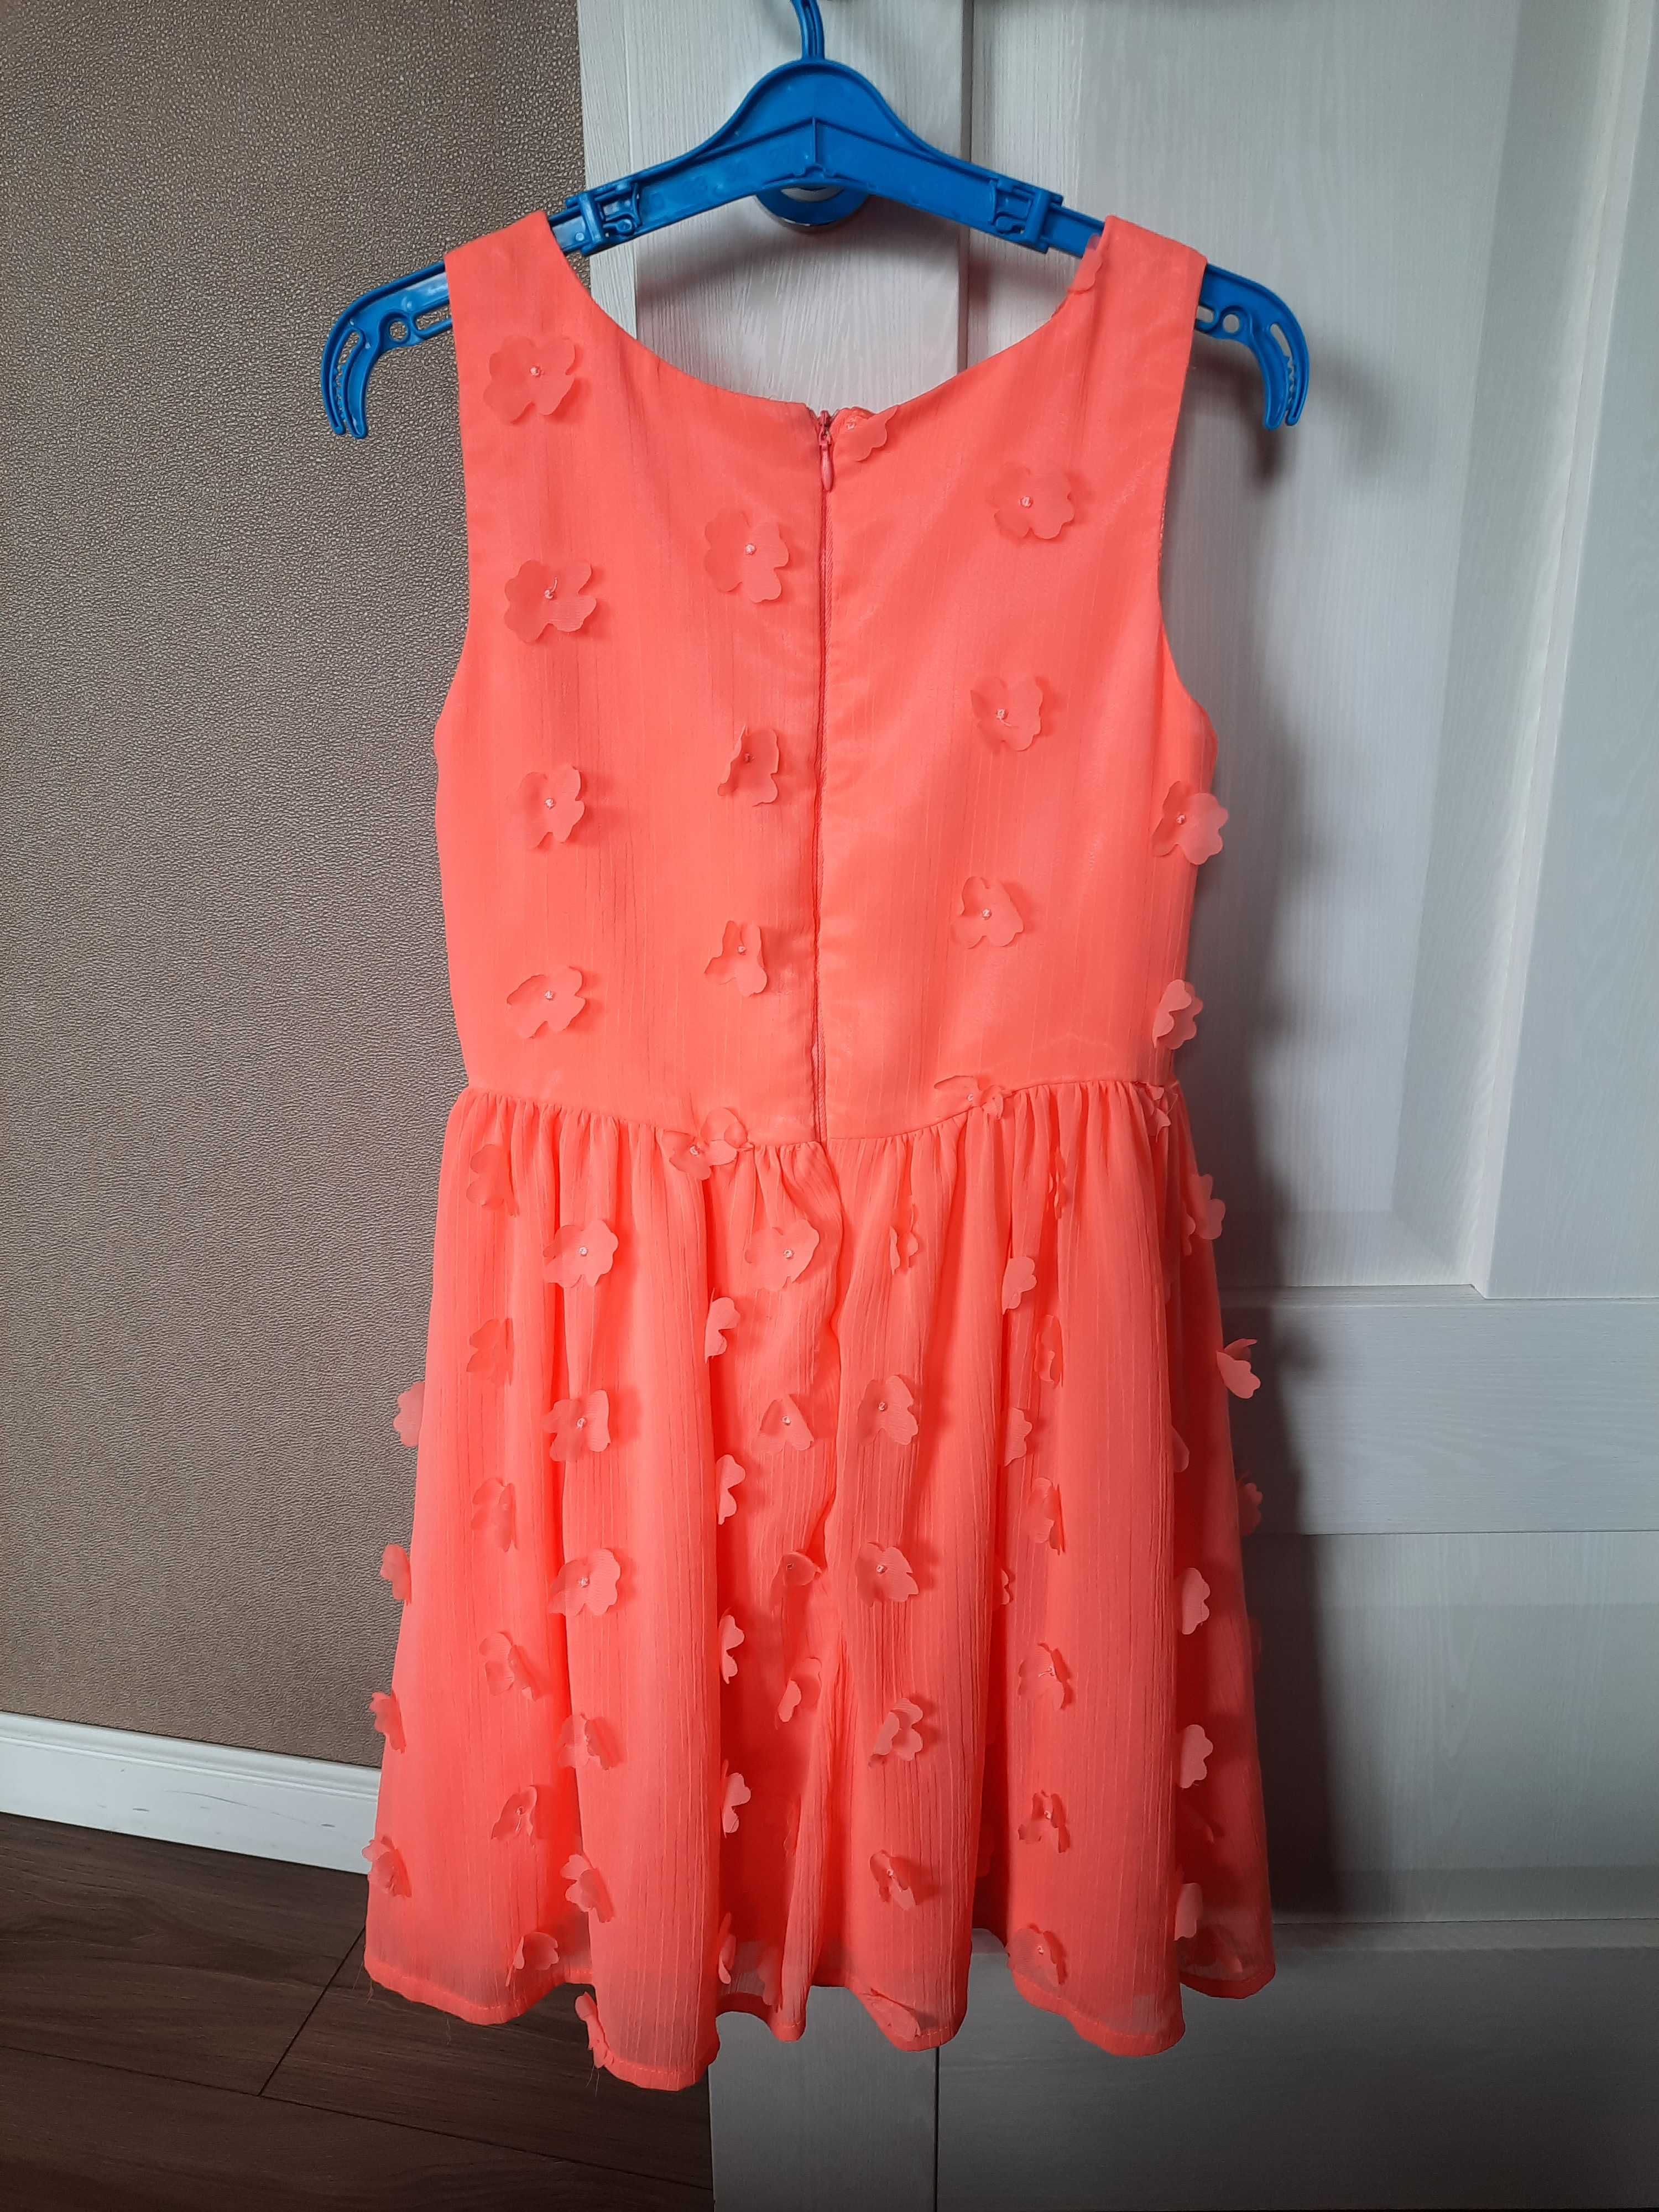 Neonowa sukienka 134, CoolClub, Smyk, kwiaty 3D